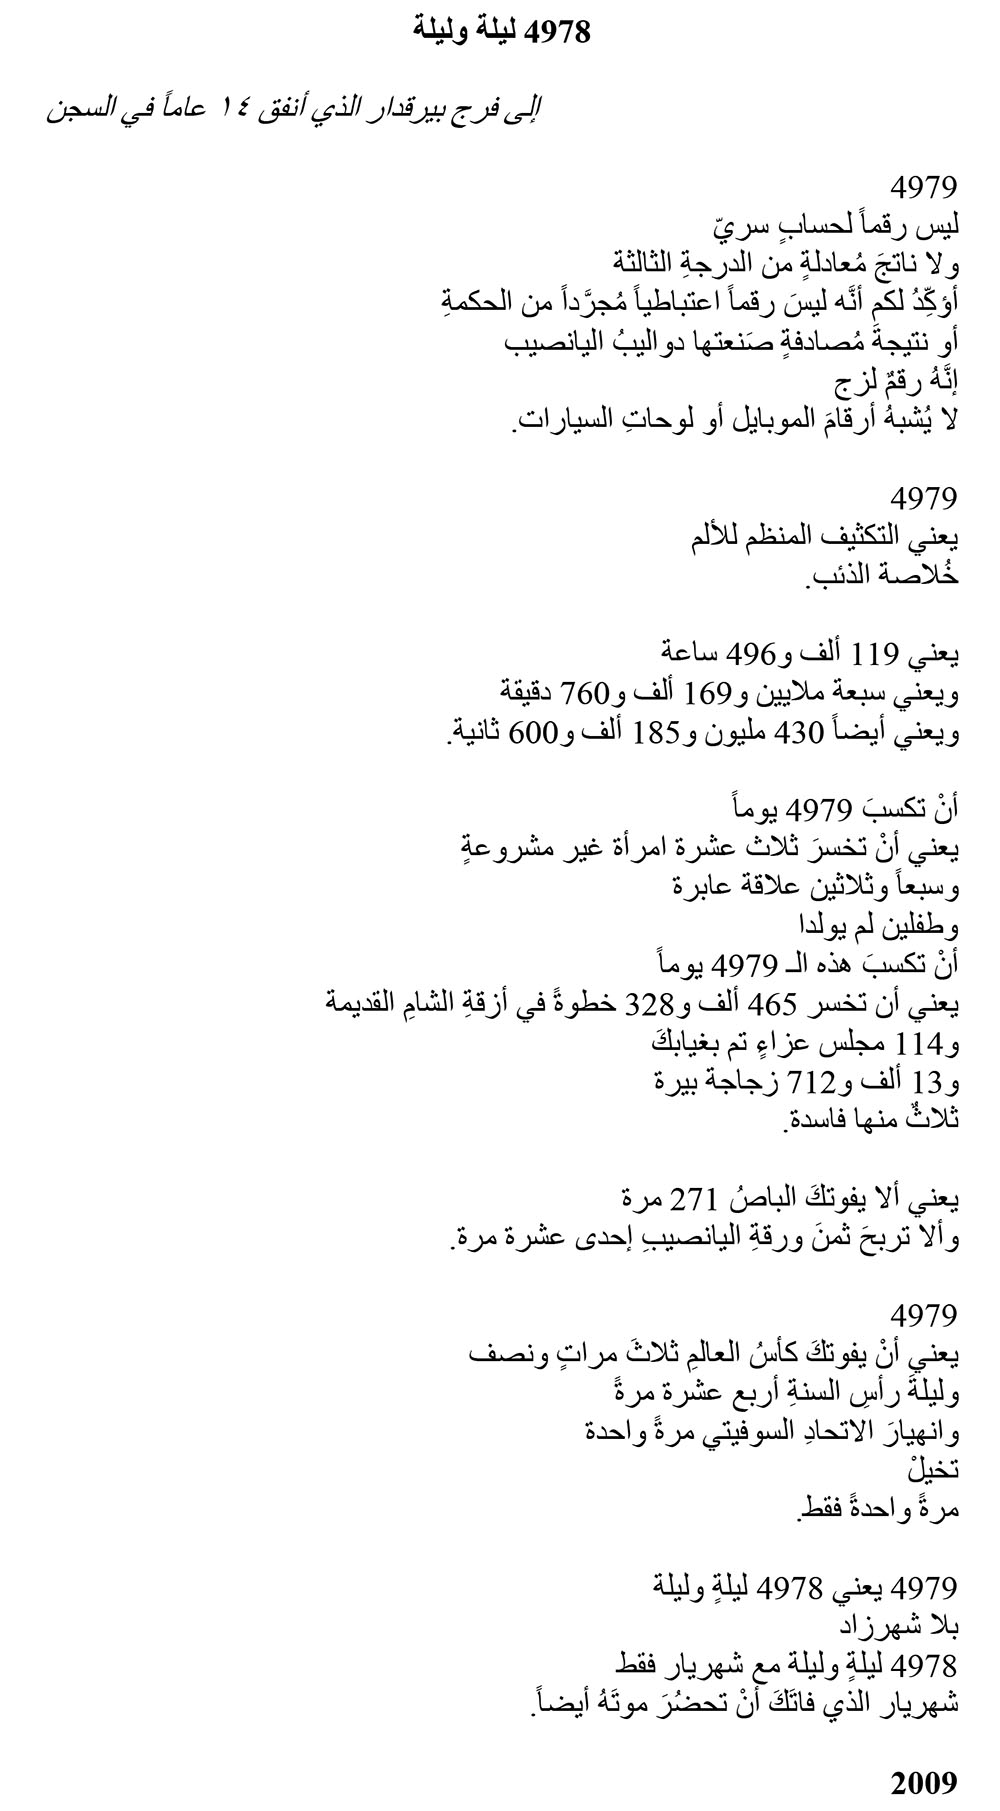 4978 Nights and One Night 2 Arabic, a poem by Ghayath Almadhoun